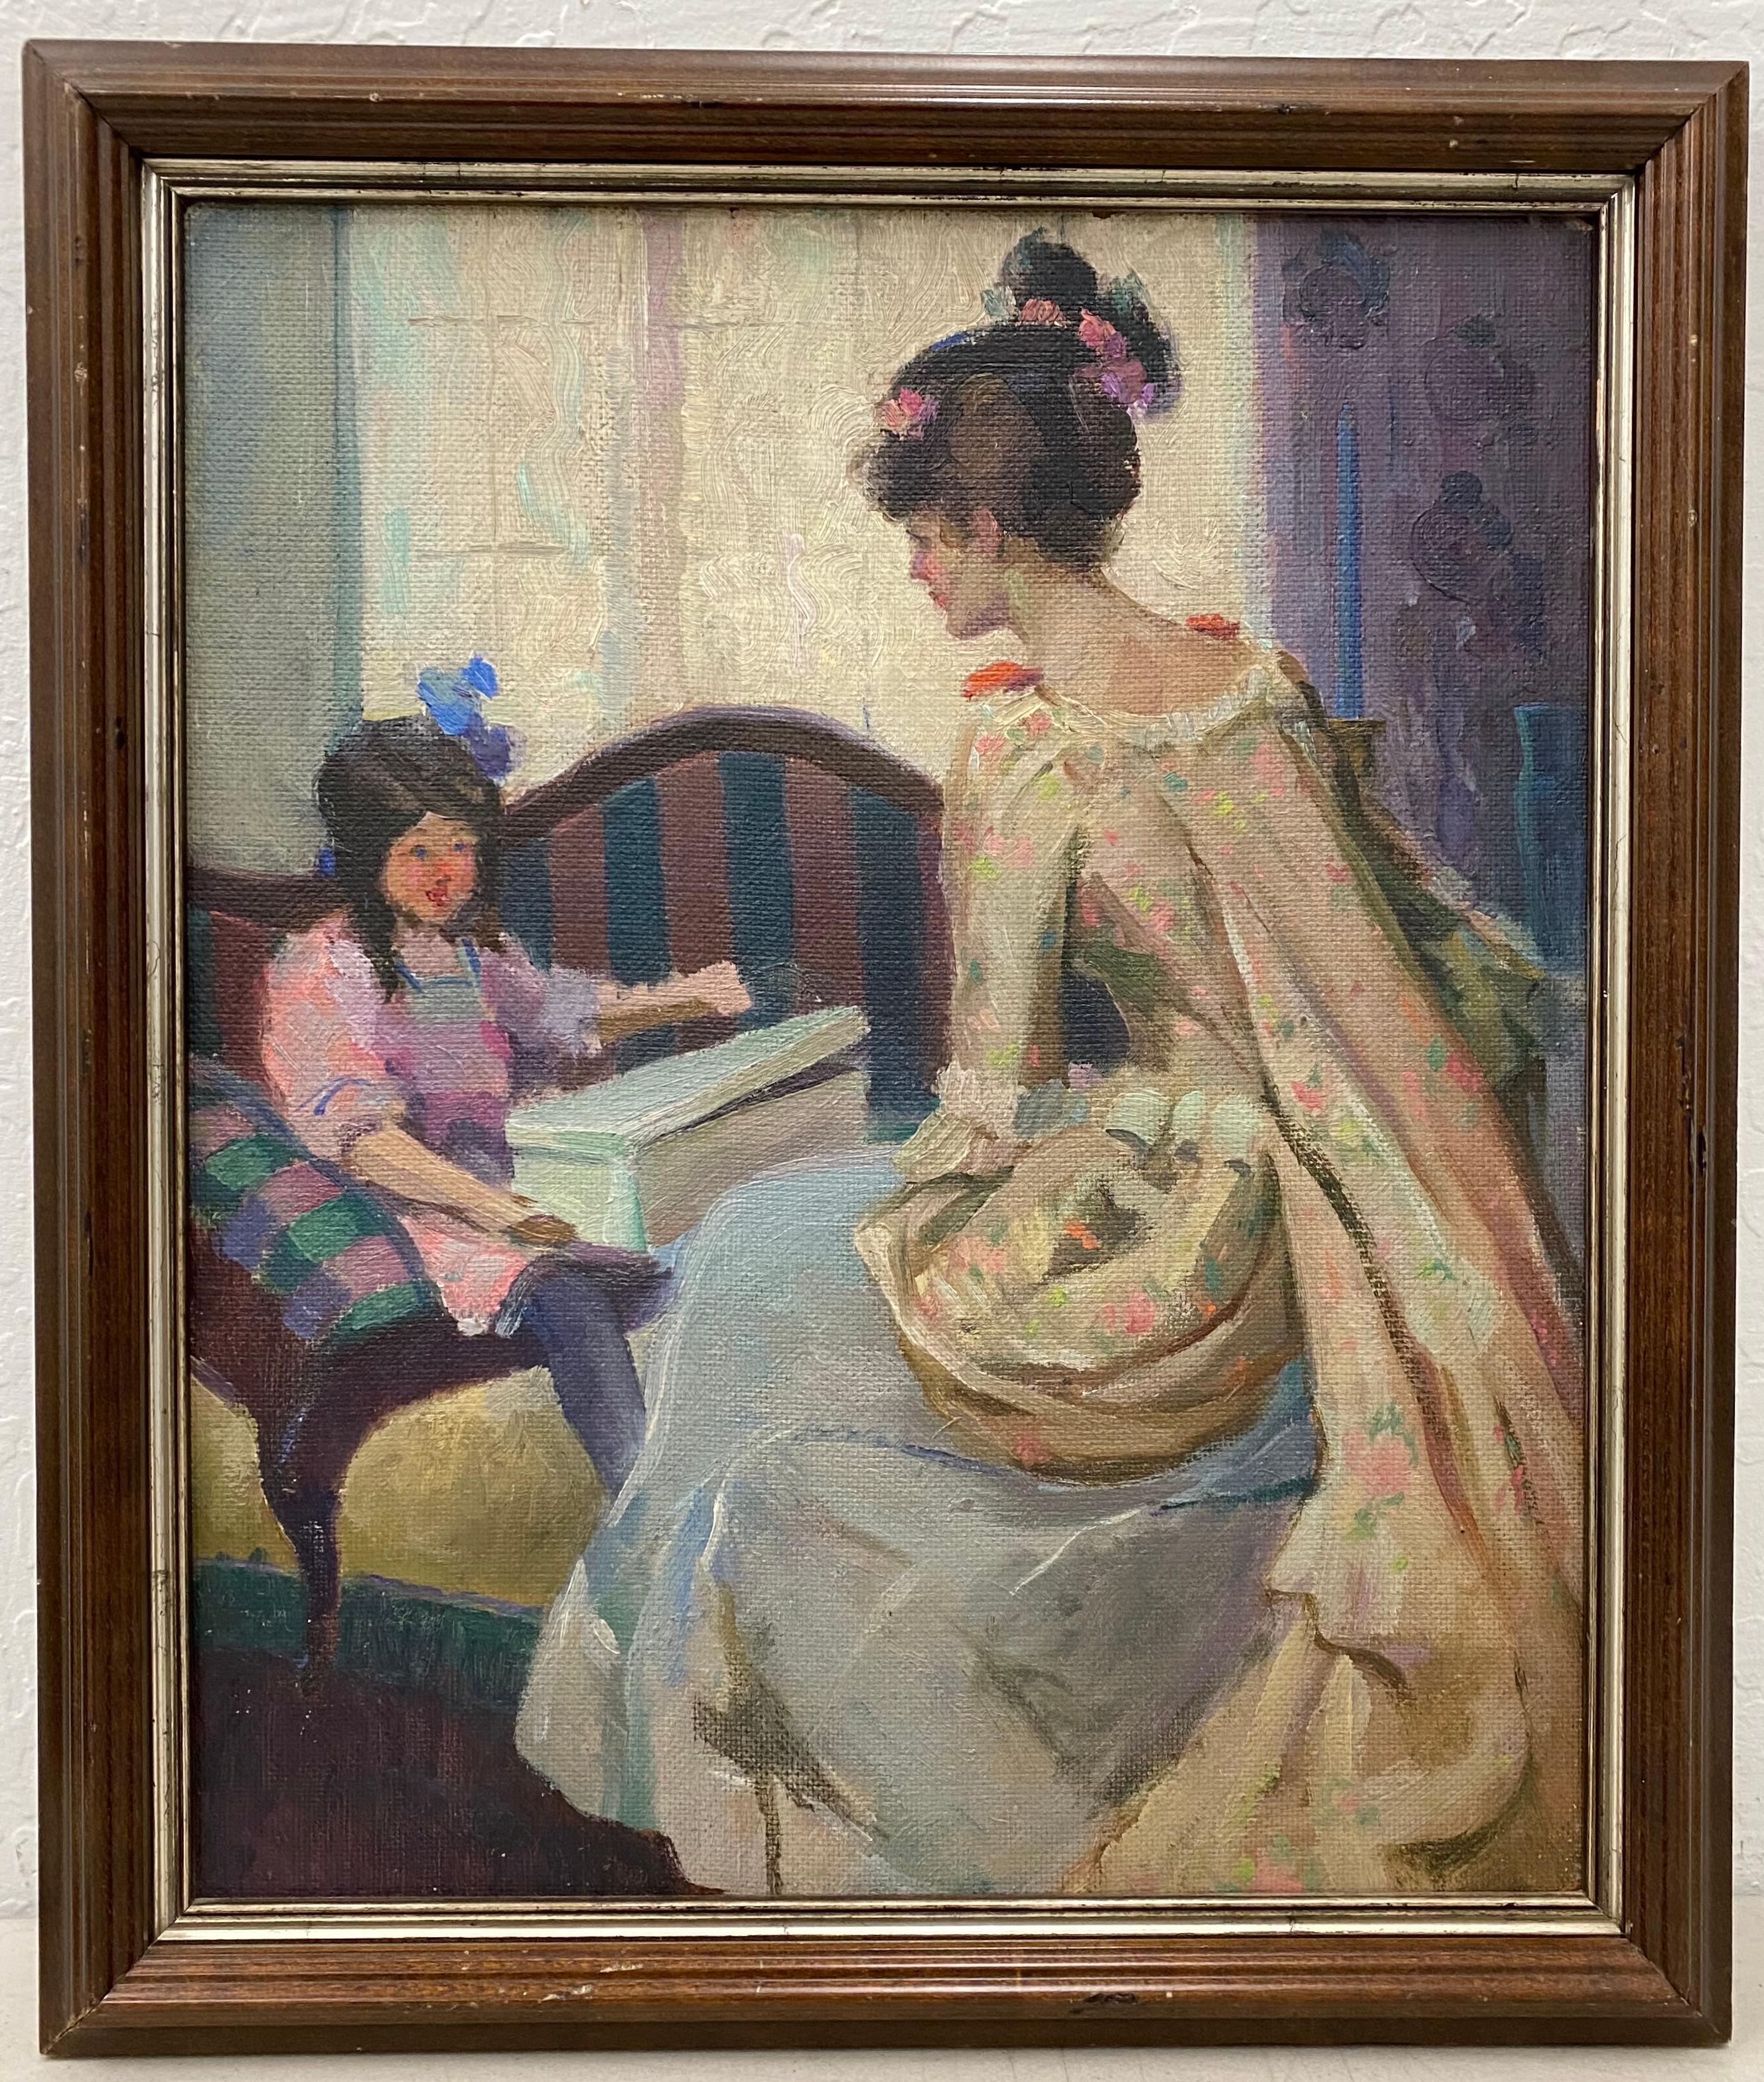 Interior Painting Henry Charles Hanning - « Mère et fille », peinture à l'huile originale de Henry Charles Hannig datant de 1930 environ